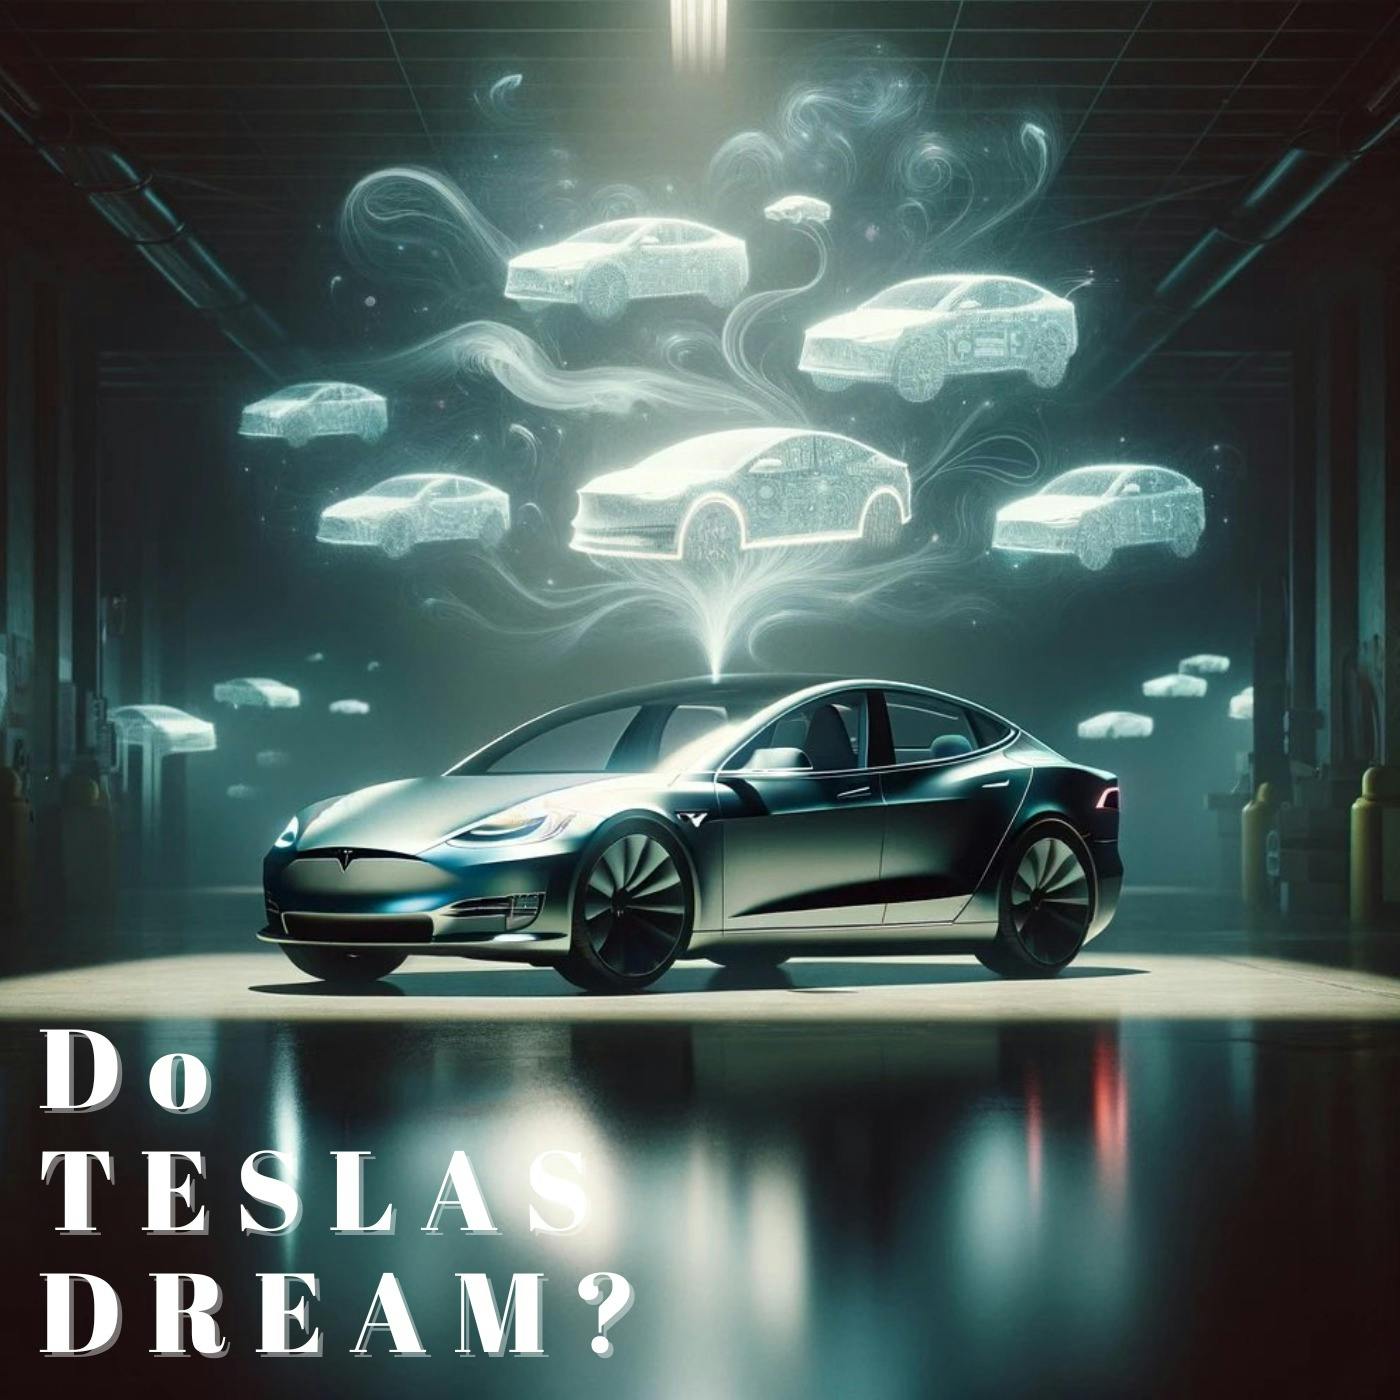 Do Teslas Dream?